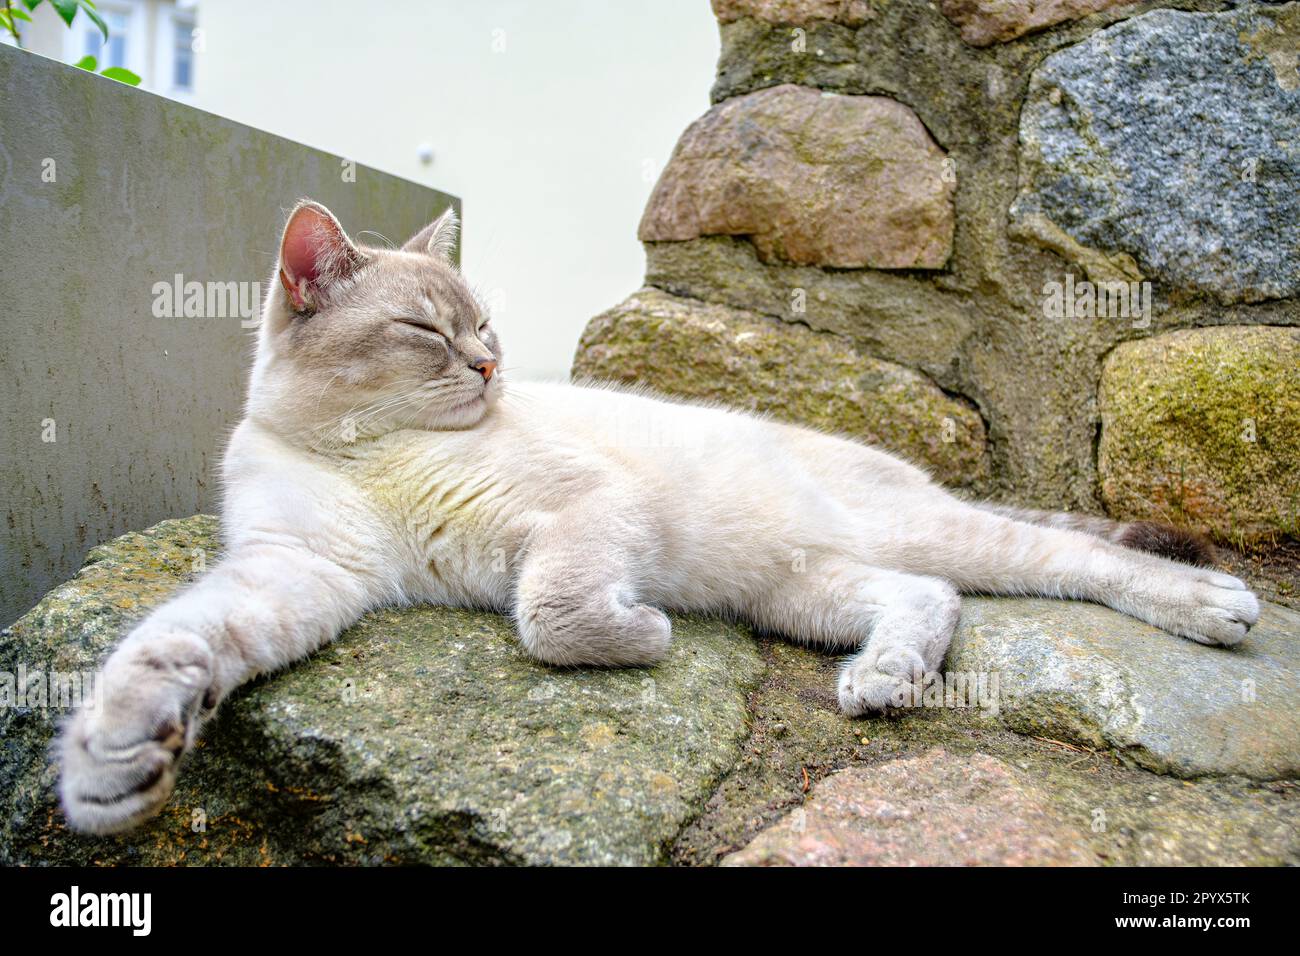 A domestic cat dozes relaxed and unhurried on a stone wall. Eine Hauskätze döst gemütlich und entspannt auf einer Steinmauer. Stock Photo